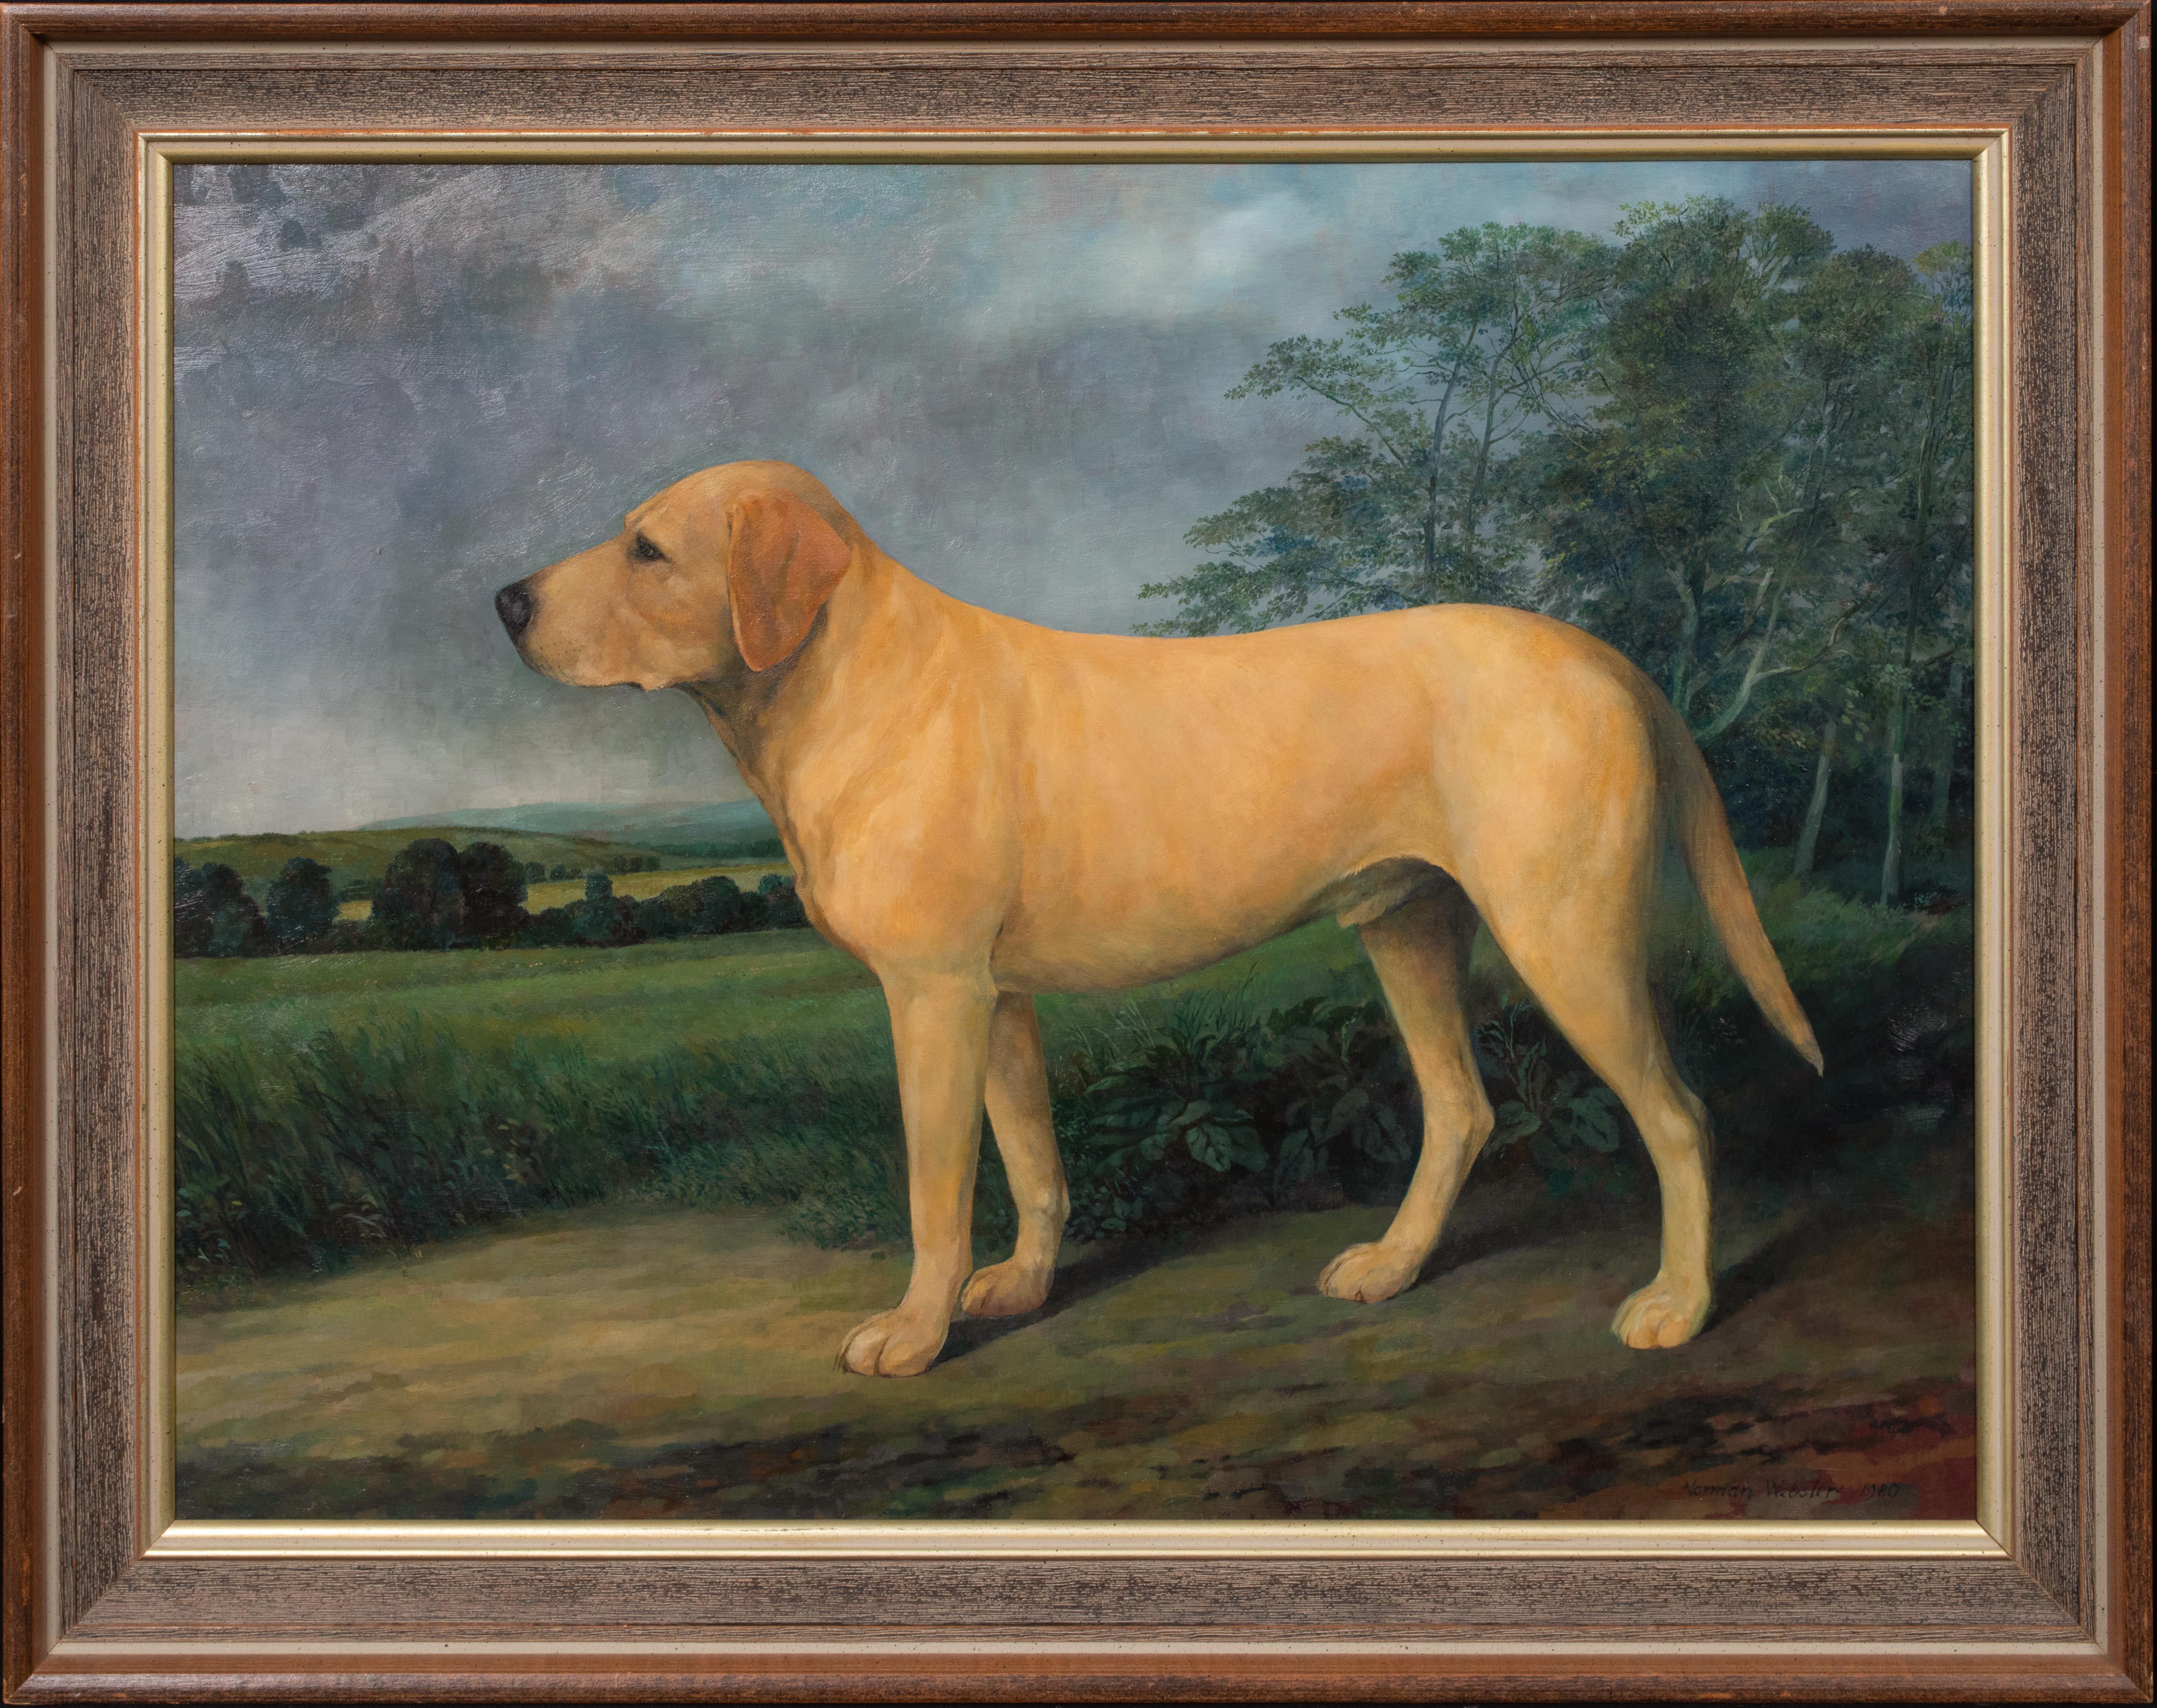 Unknown Portrait Painting - Portrait Of "Major" A Labrador Retriever In A Landscape, 20th Century